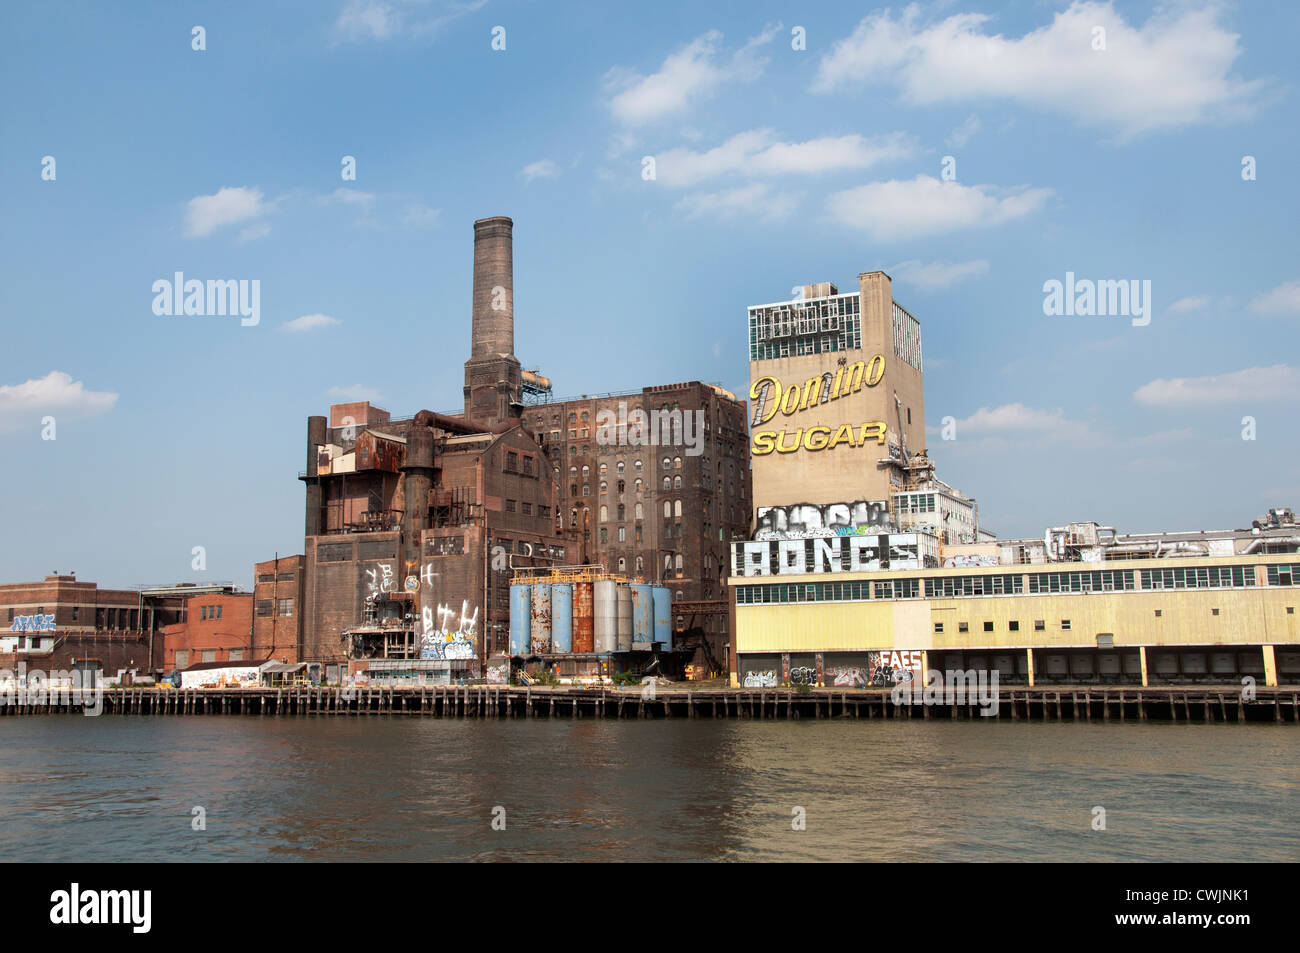 Domino Zuckerraffinerie Williamsburg Brooklyn New York Vereinigte Staaten von Amerika Stockfoto